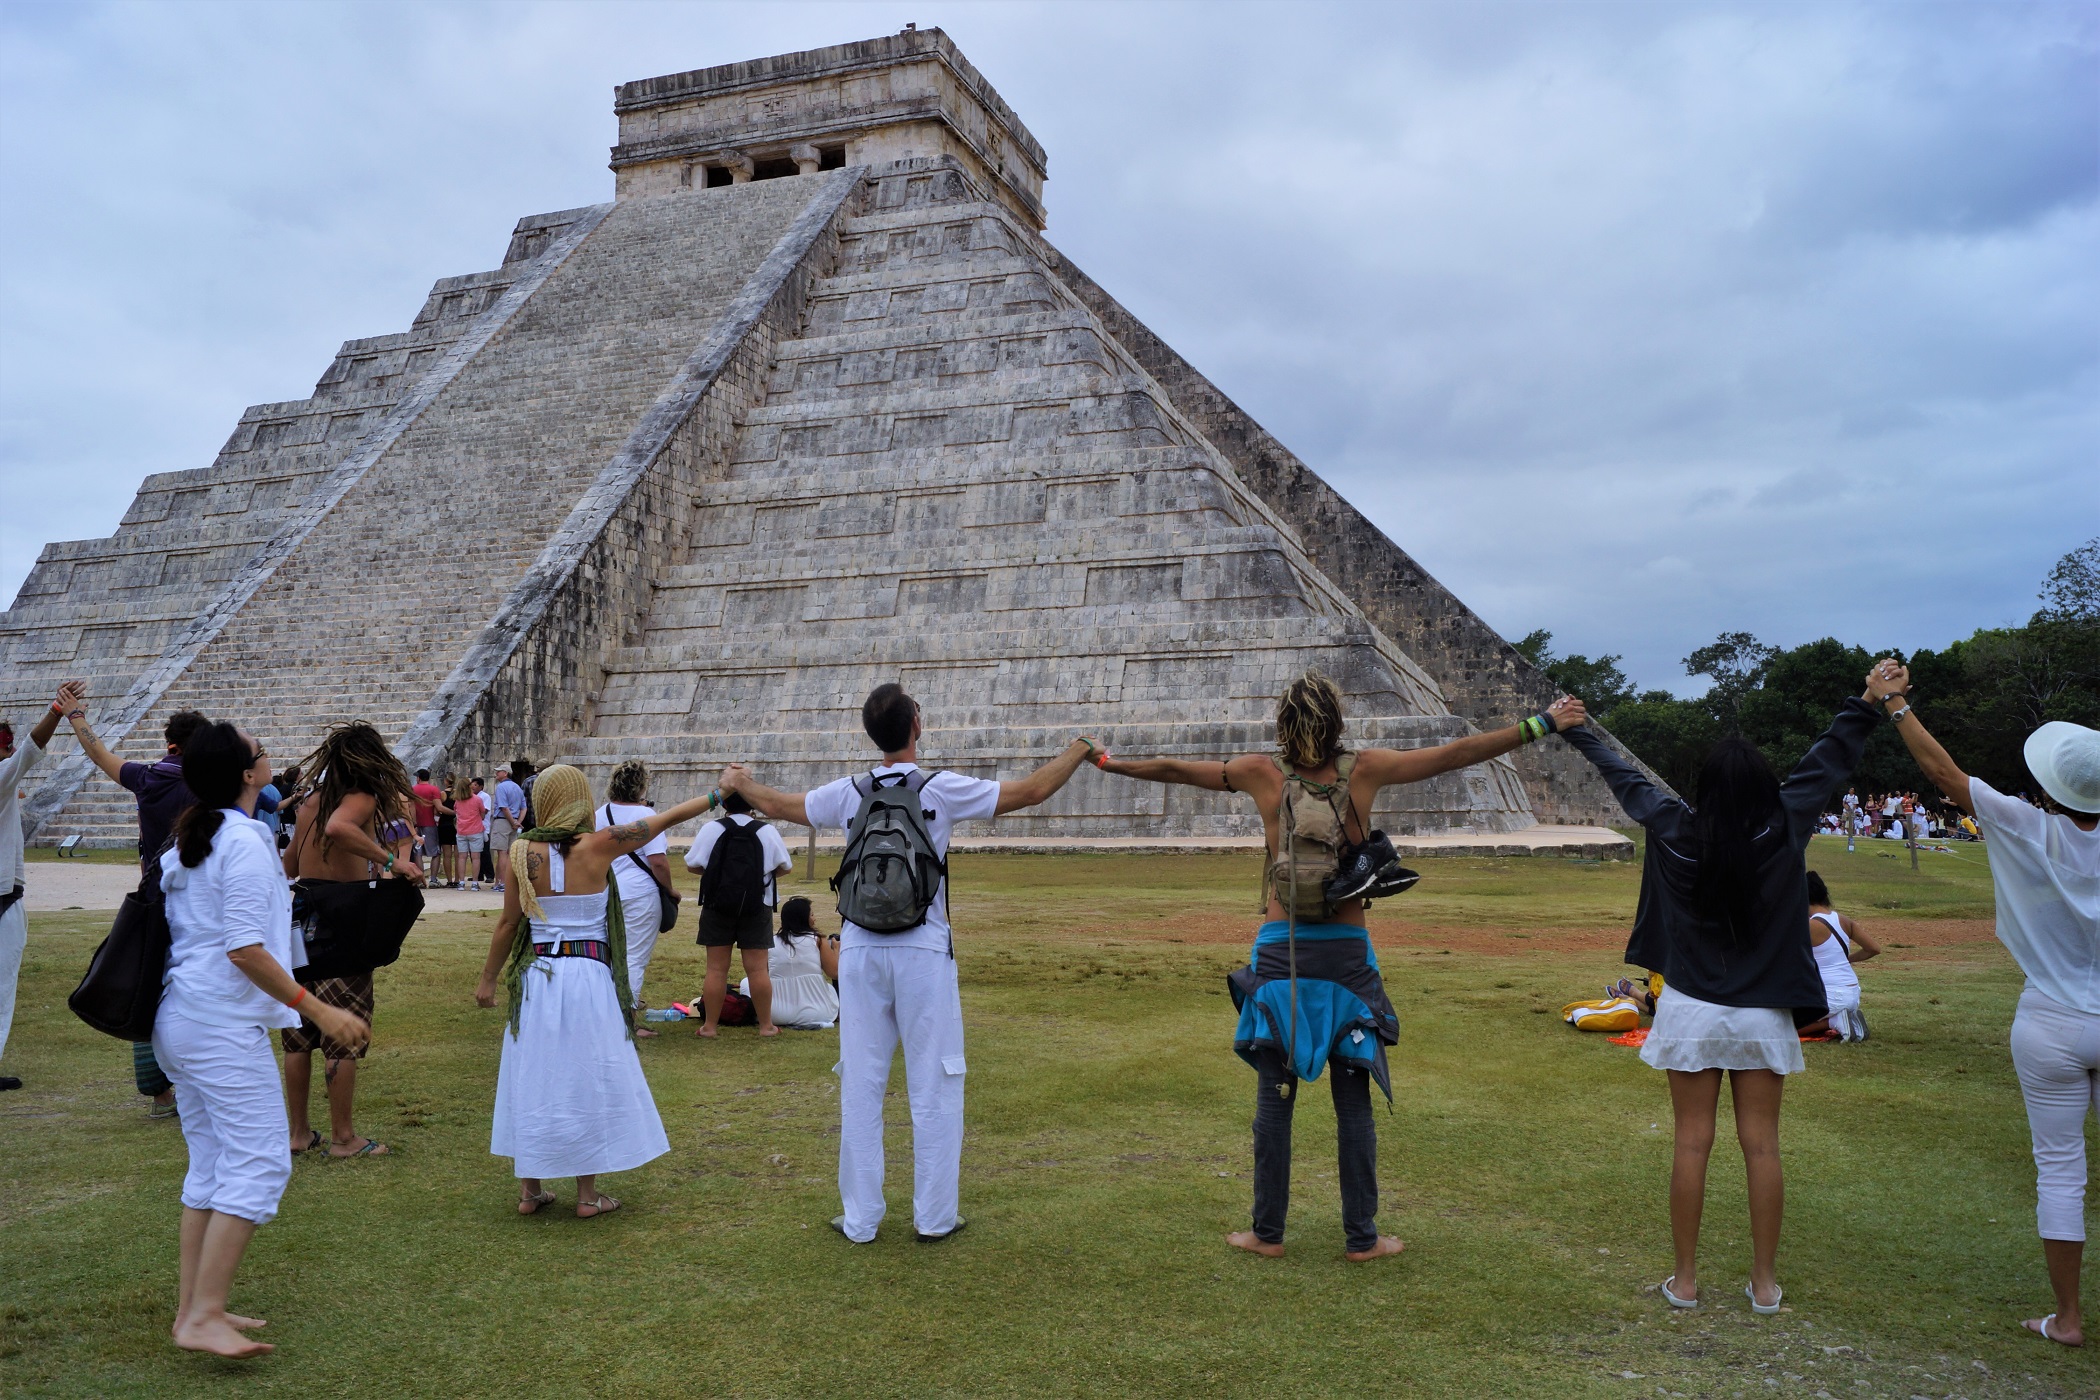 Equinoccio de primavera 2023: qué horarios de visita tendrán Teotihuacan, Chichén Itzá y otras zonas arqueológicas